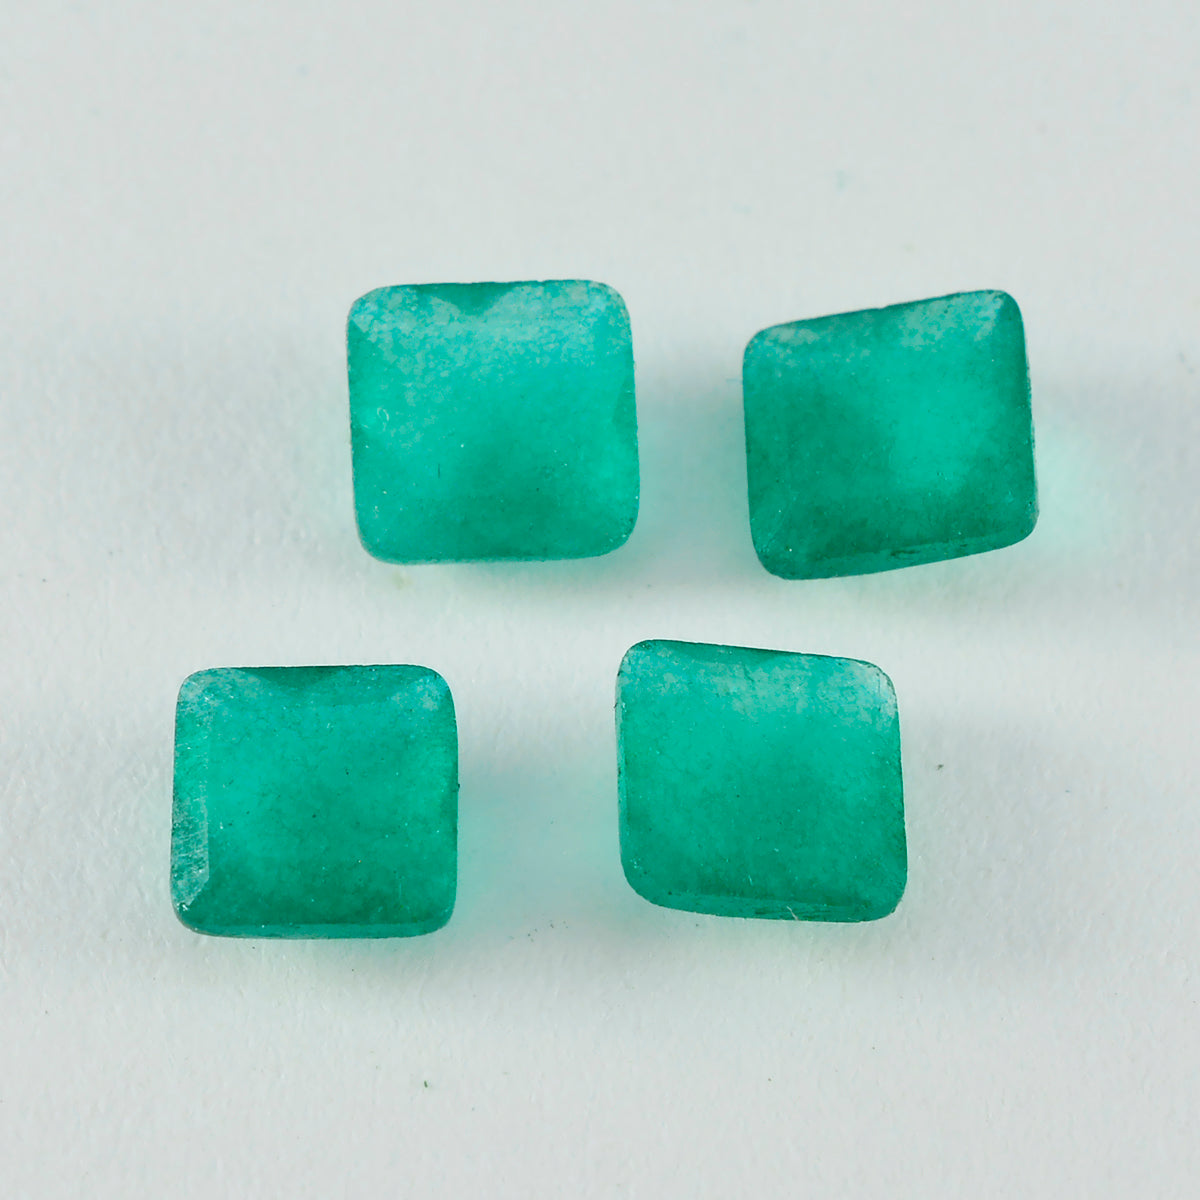 Riyogems 1pc véritable jaspe vert à facettes 14x14mm forme carrée pierres précieuses de qualité aaa